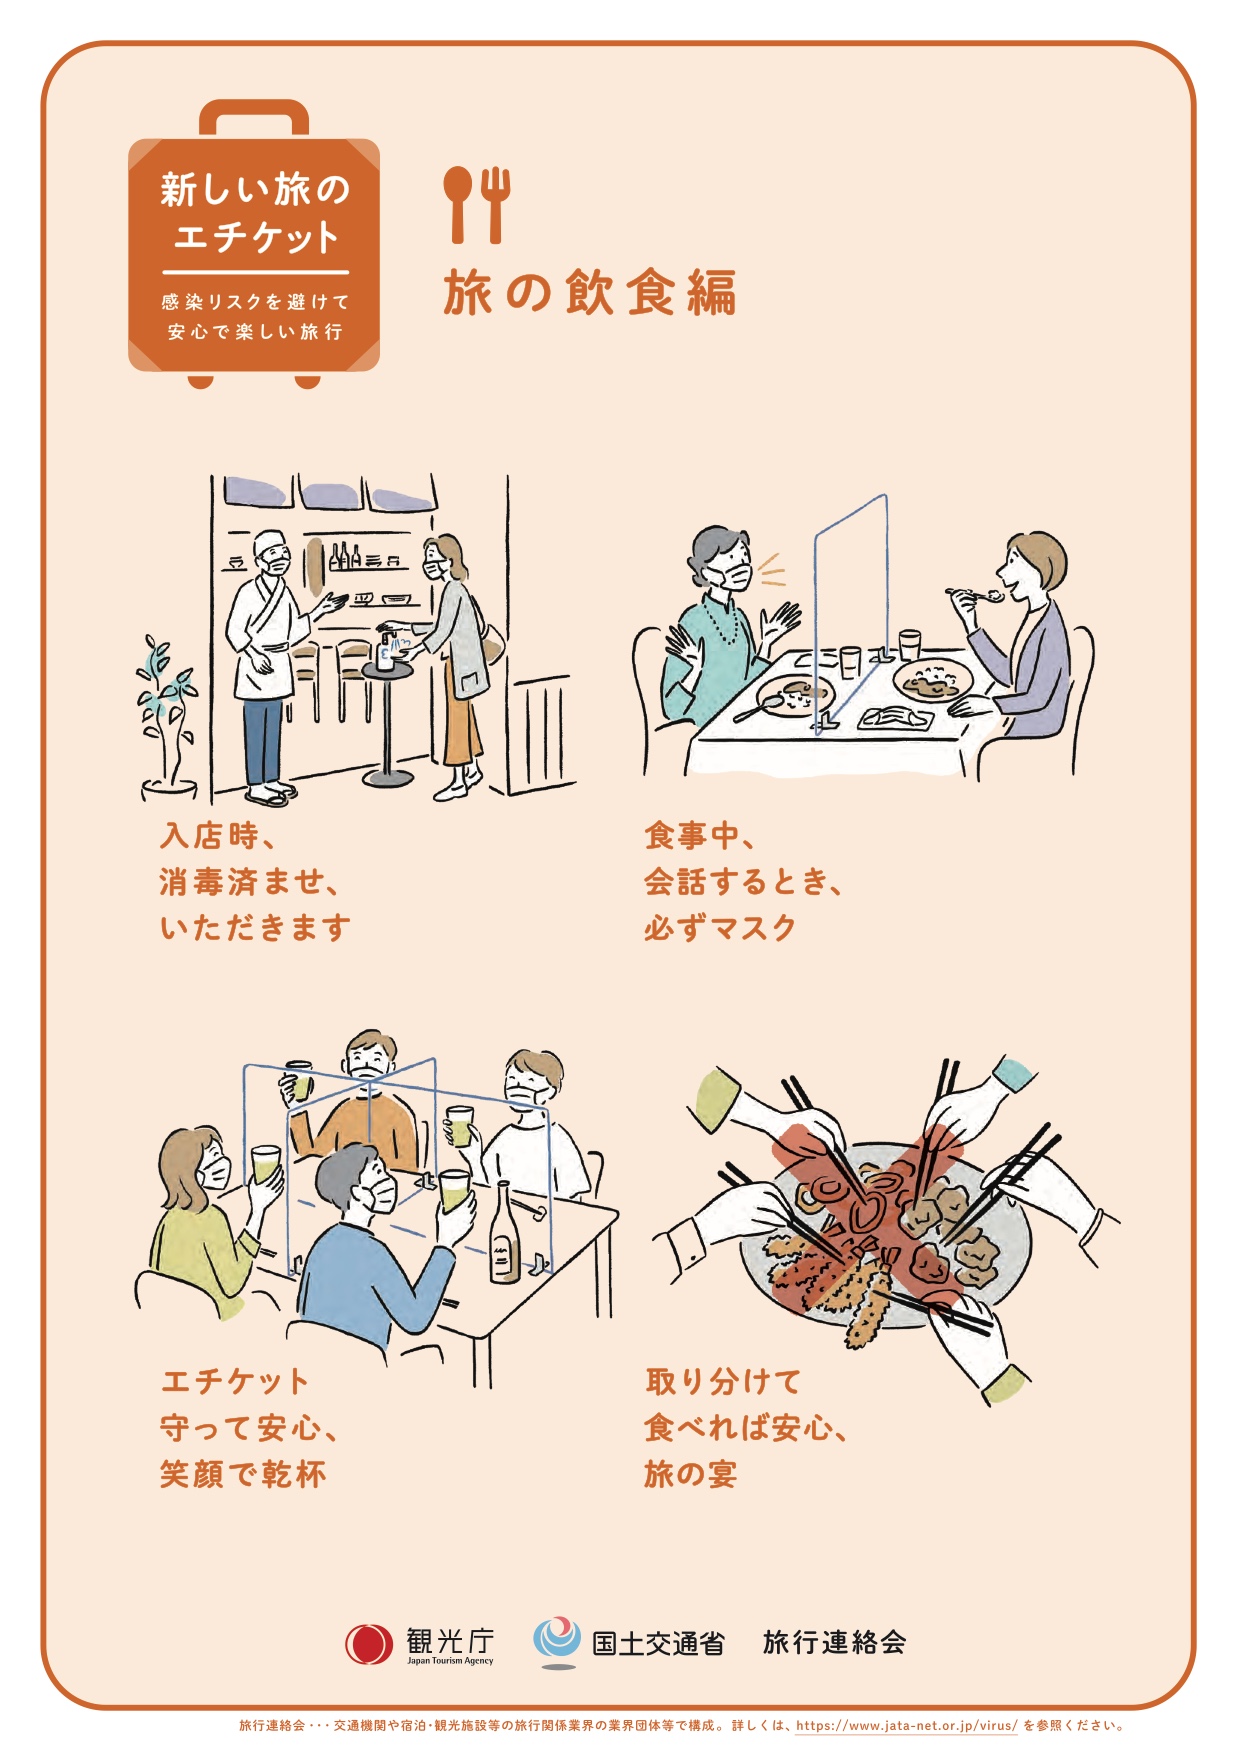 Die Maske sollte auch bei Gesprächen im Restaurant aufbleiben. Und: In den japanischen Restaurants werden die Trennwände nicht zwischen Gruppen, sondern zwischen den Personen, die miteinander sprechen, positioniert.  | Tourismusbehörde Japan